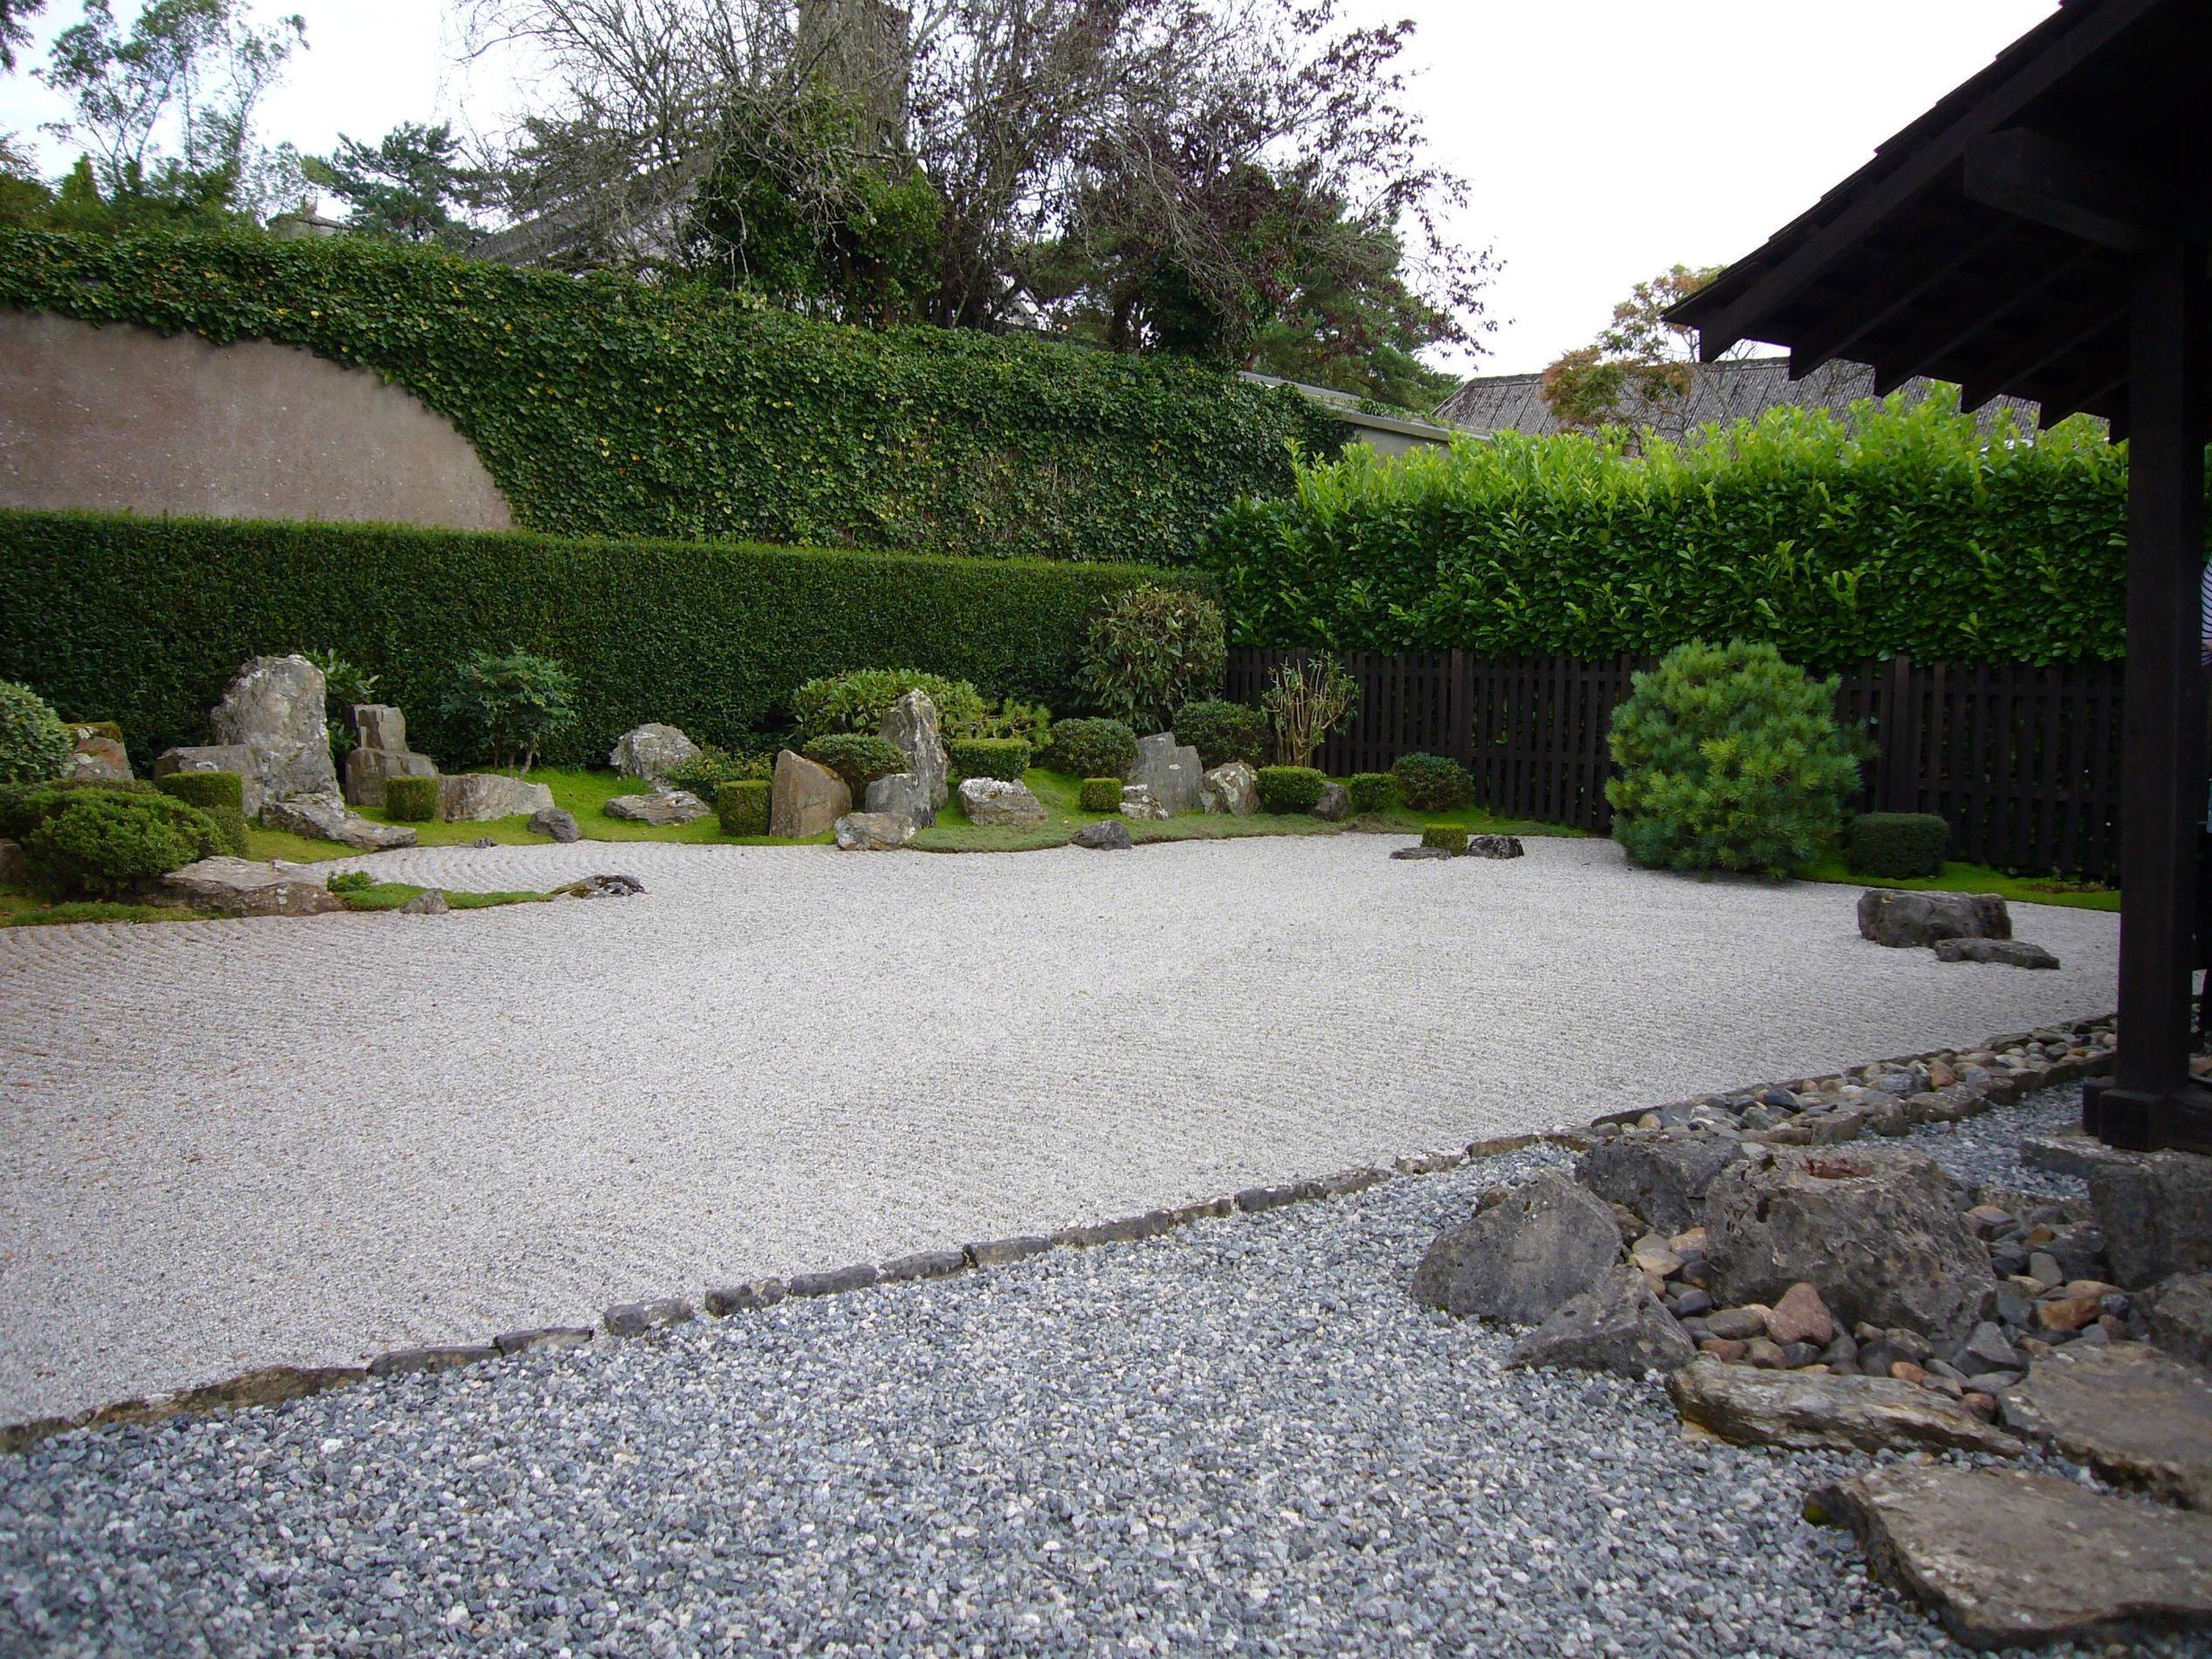 Zen Sand Garden Outdoor - Zen gardens, The zen and Kyoto on Pinterest